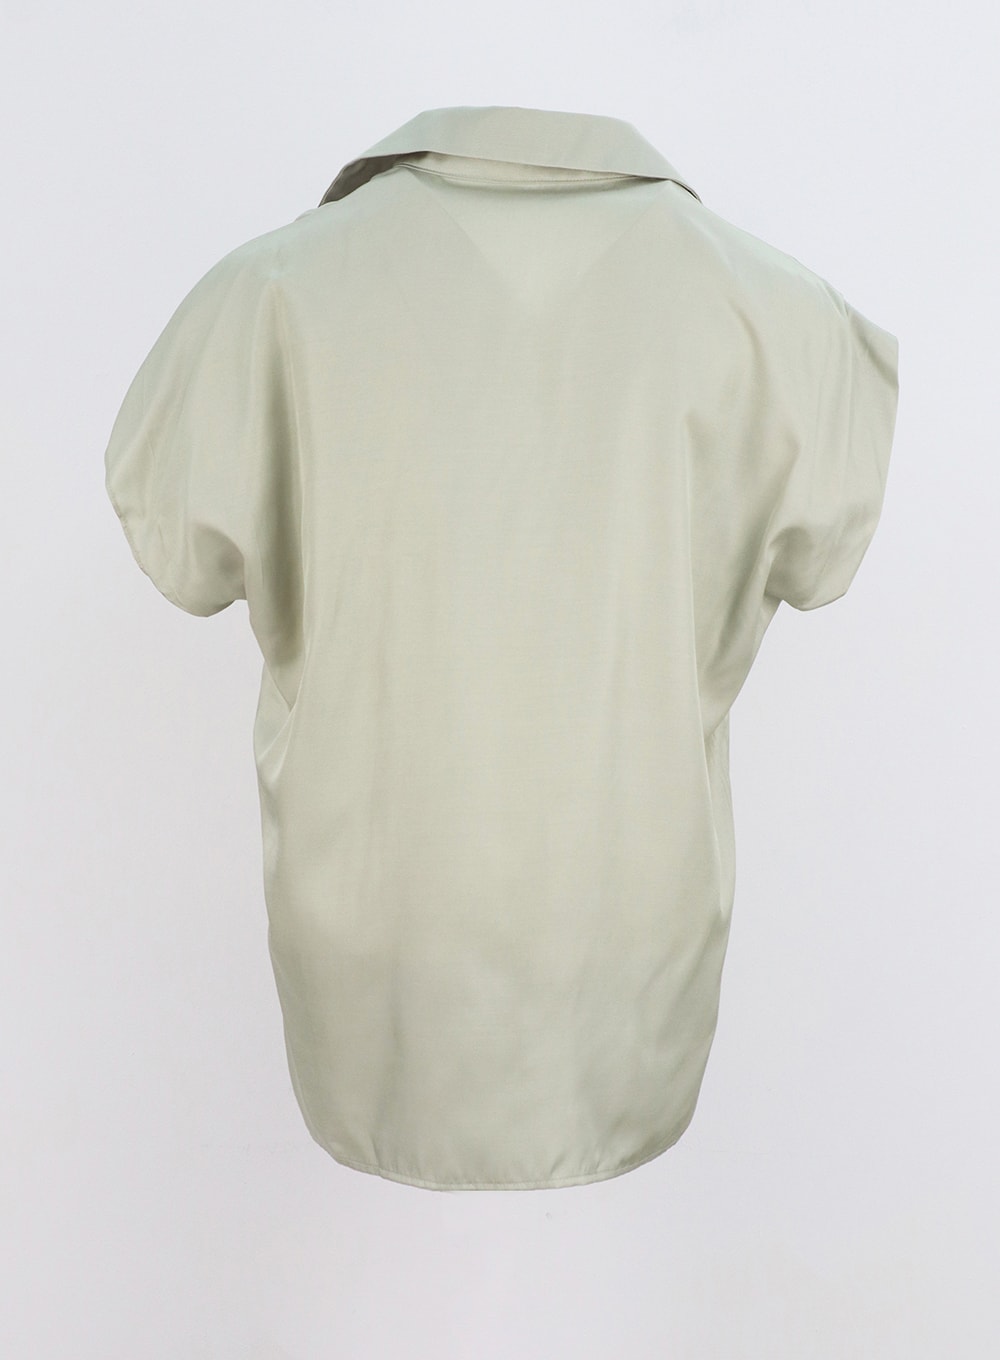 Silky Short Sleeve Blouse IY331